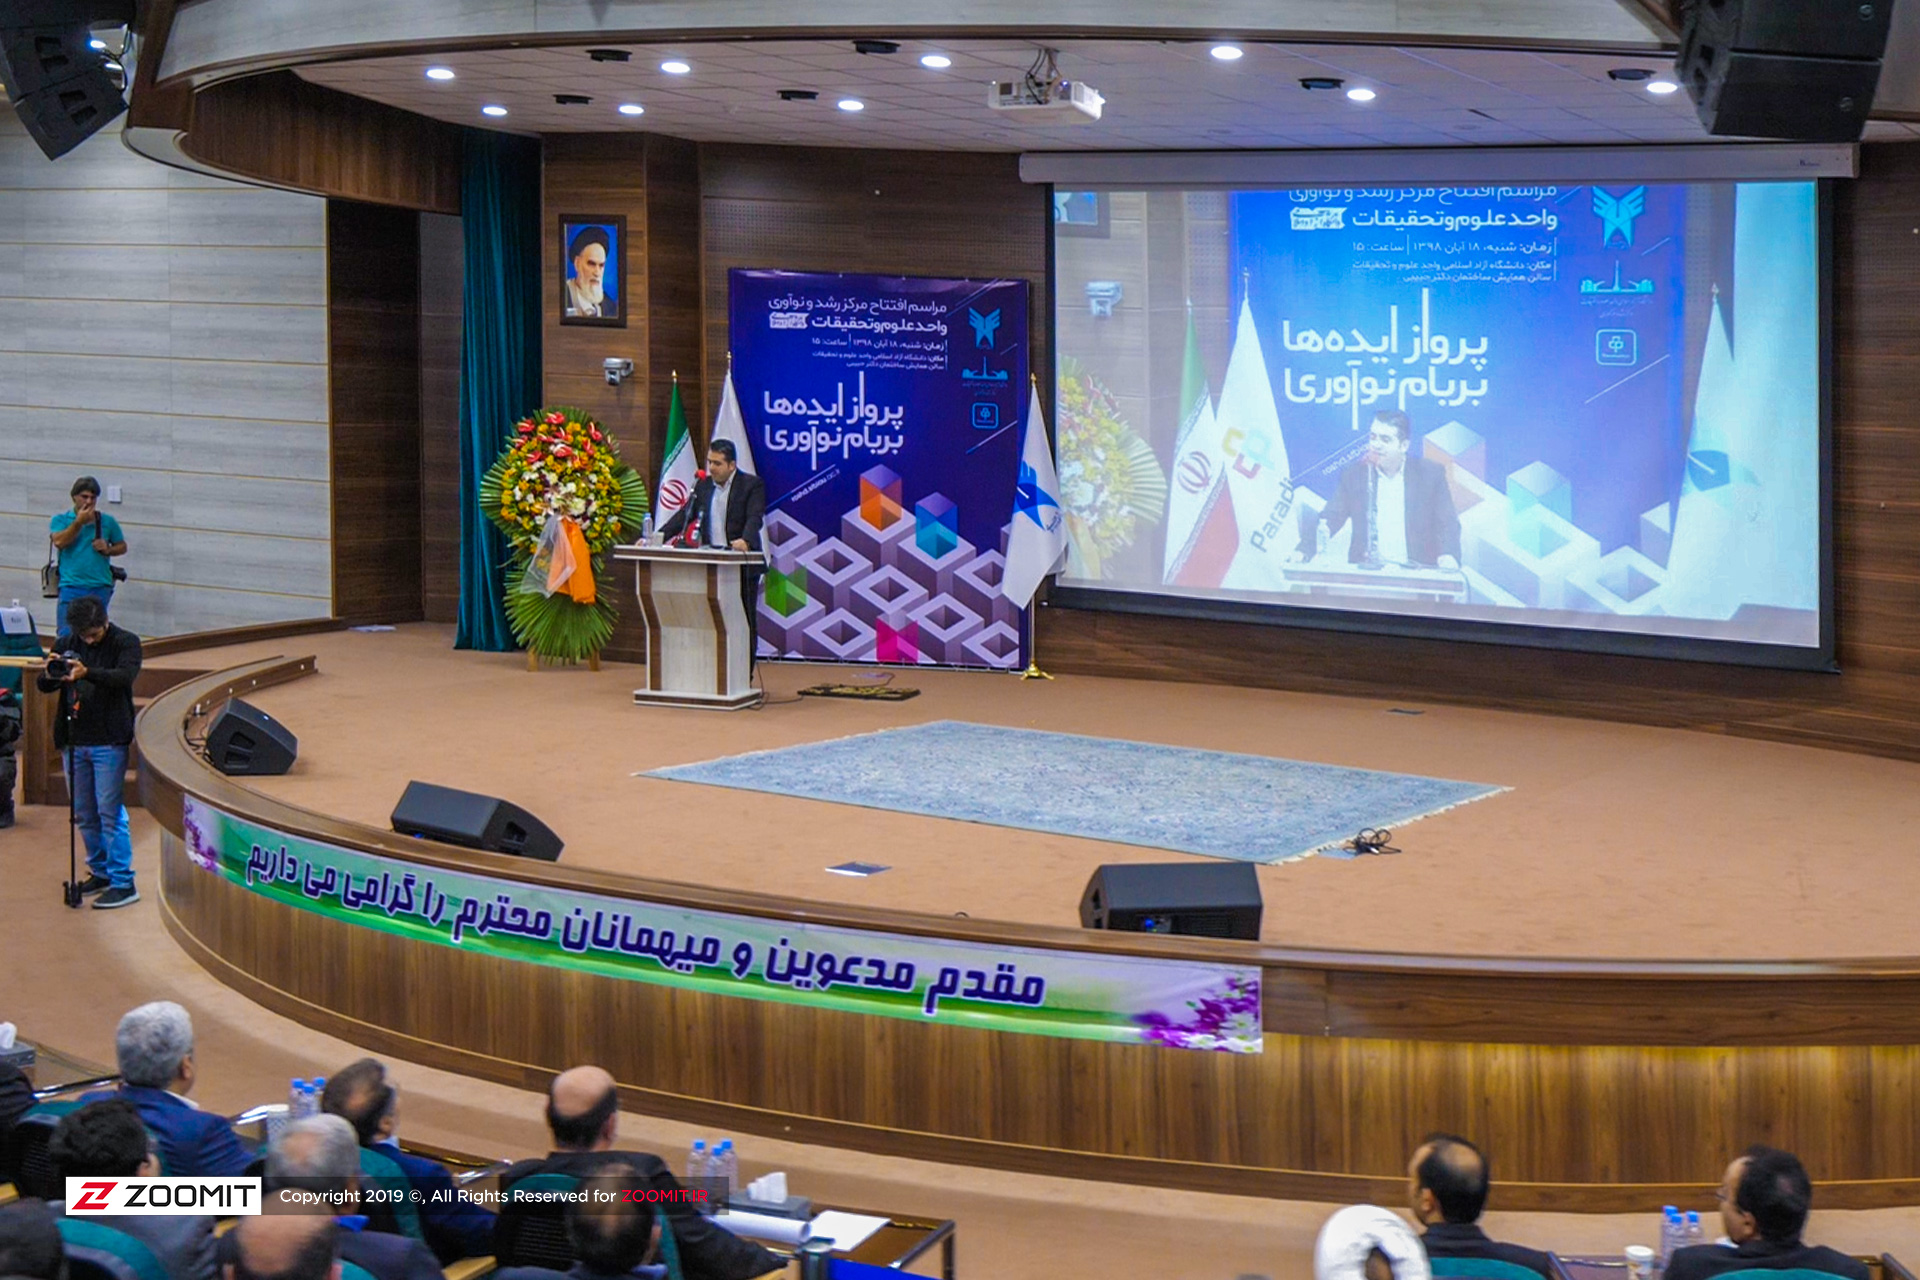 گزارش زومیت از افتتاح مرکز رشد و نوآوری دانشگاه آزاد اسلامی در واحد علوم و تحقیقات